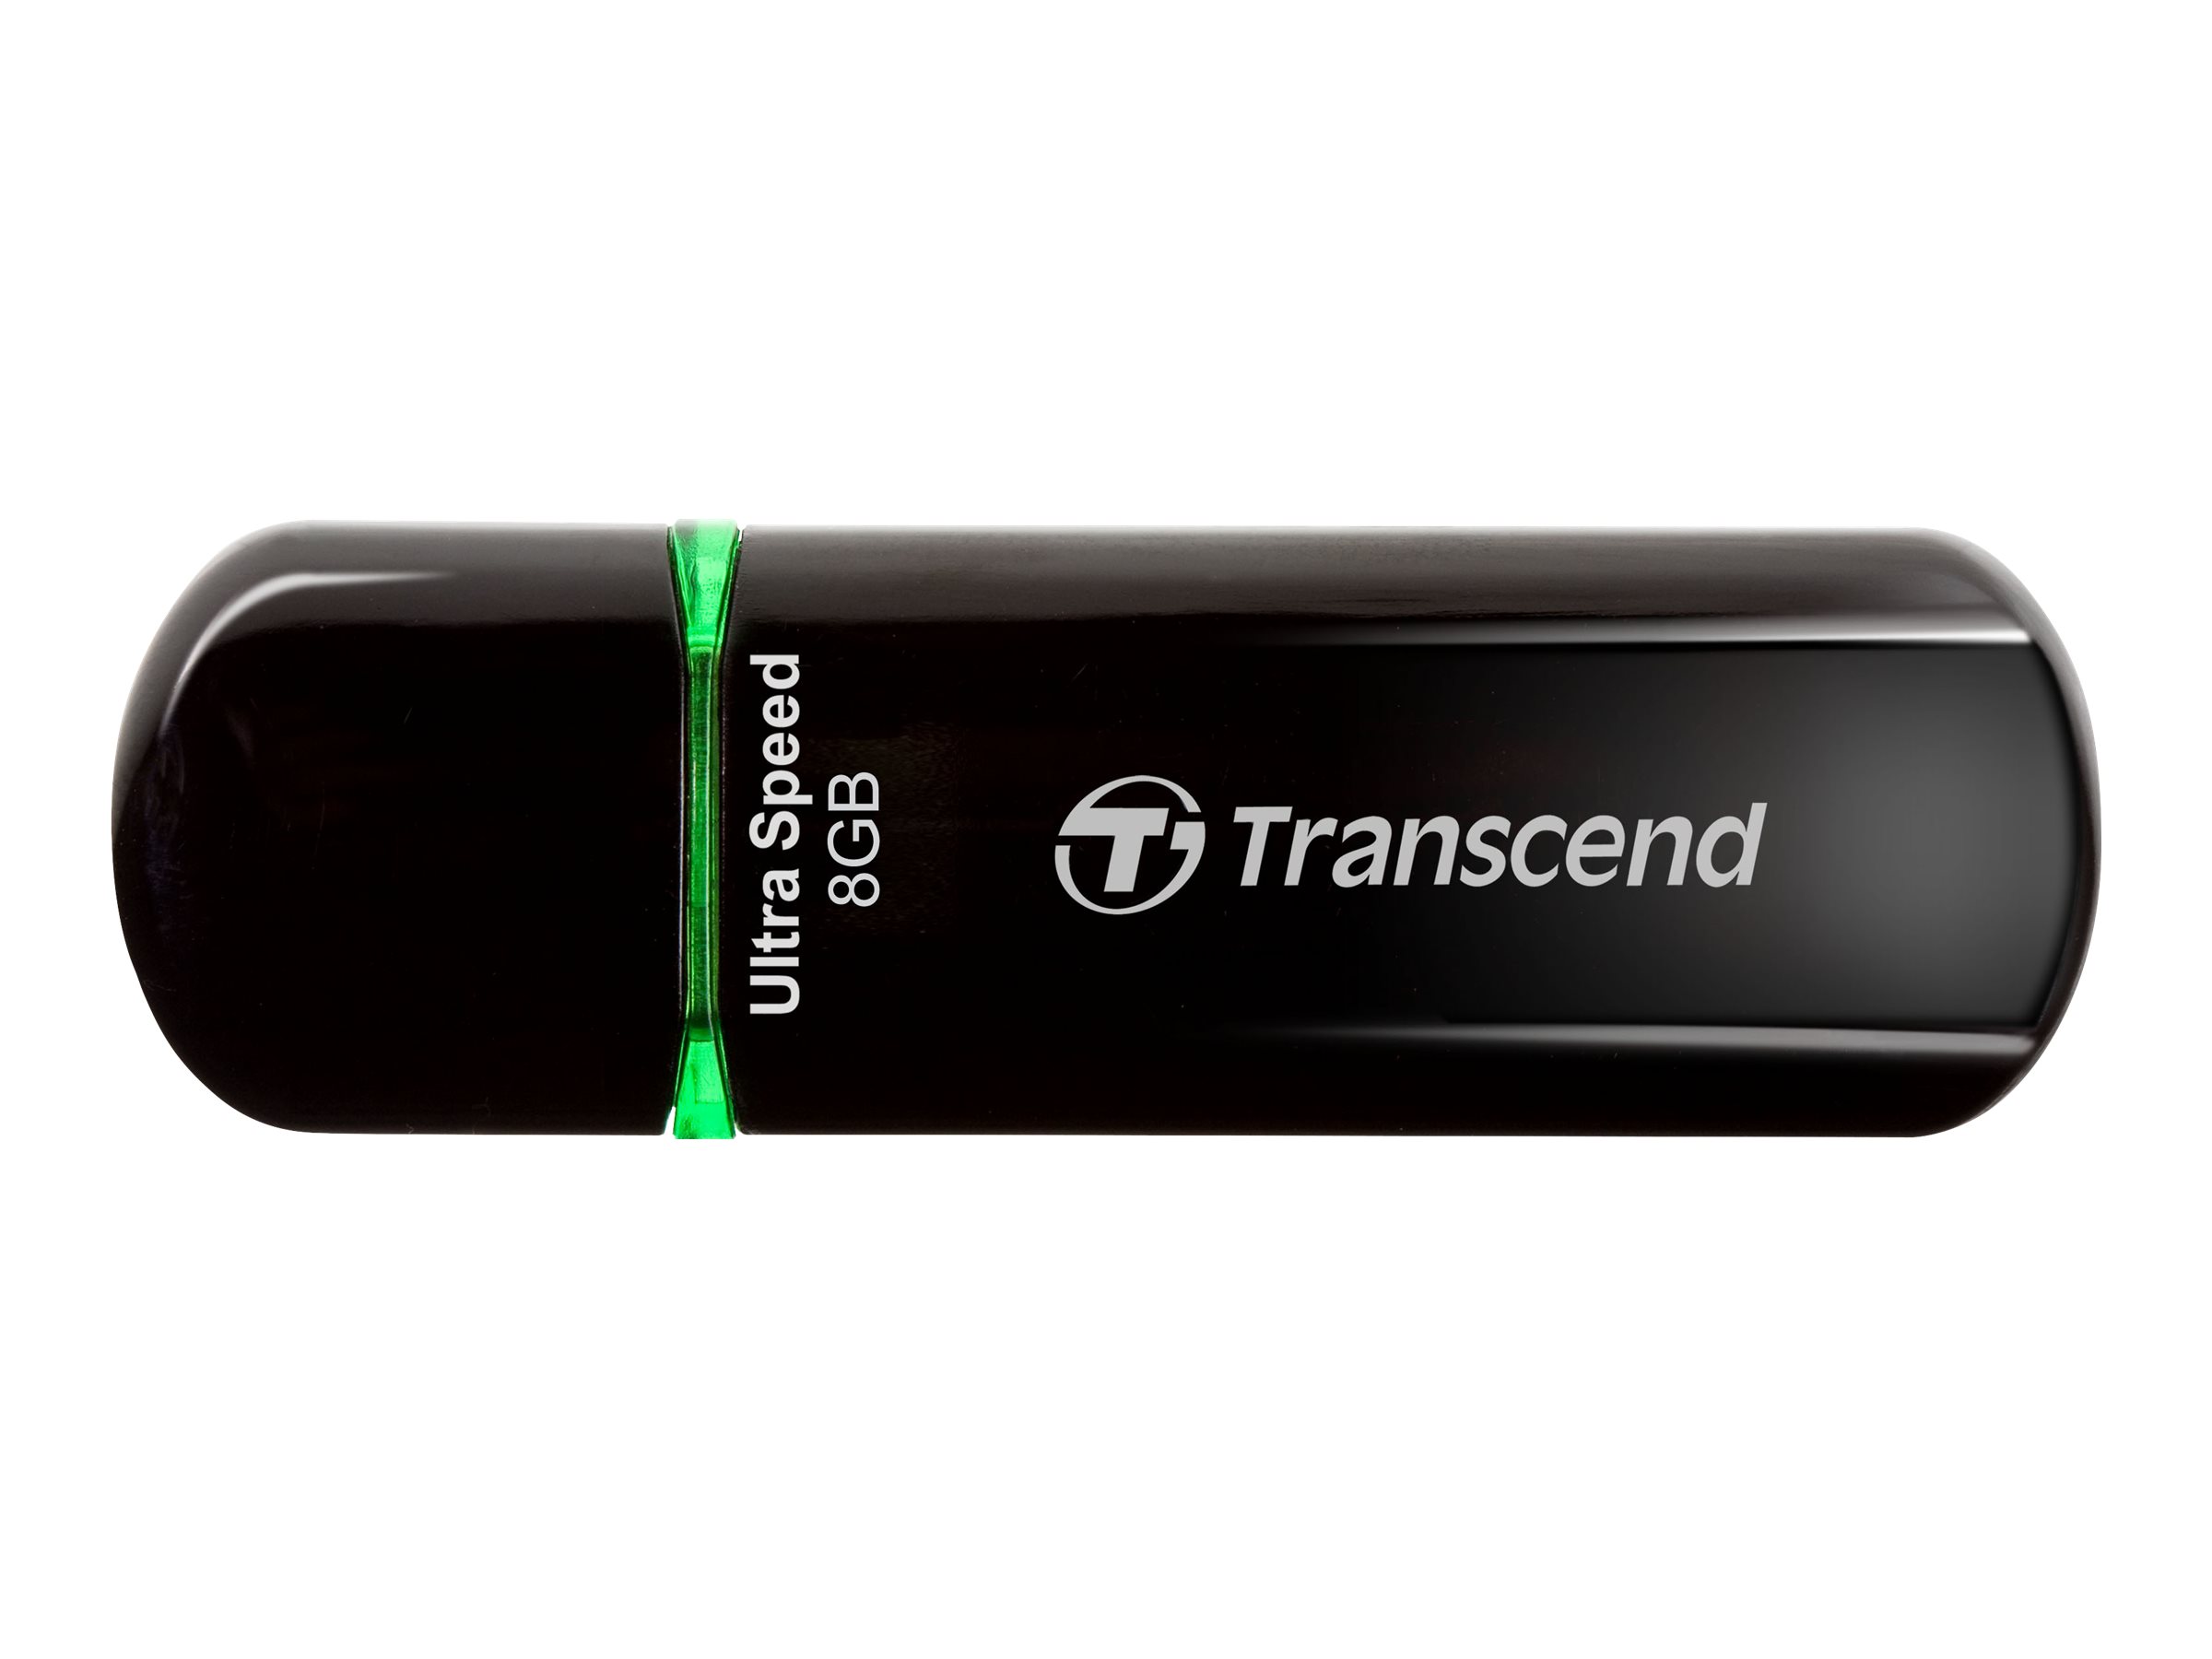 Transcend JetFlash 600 - USB-Flash-Laufwerk - 8 GB - USB 2.0 - Blau